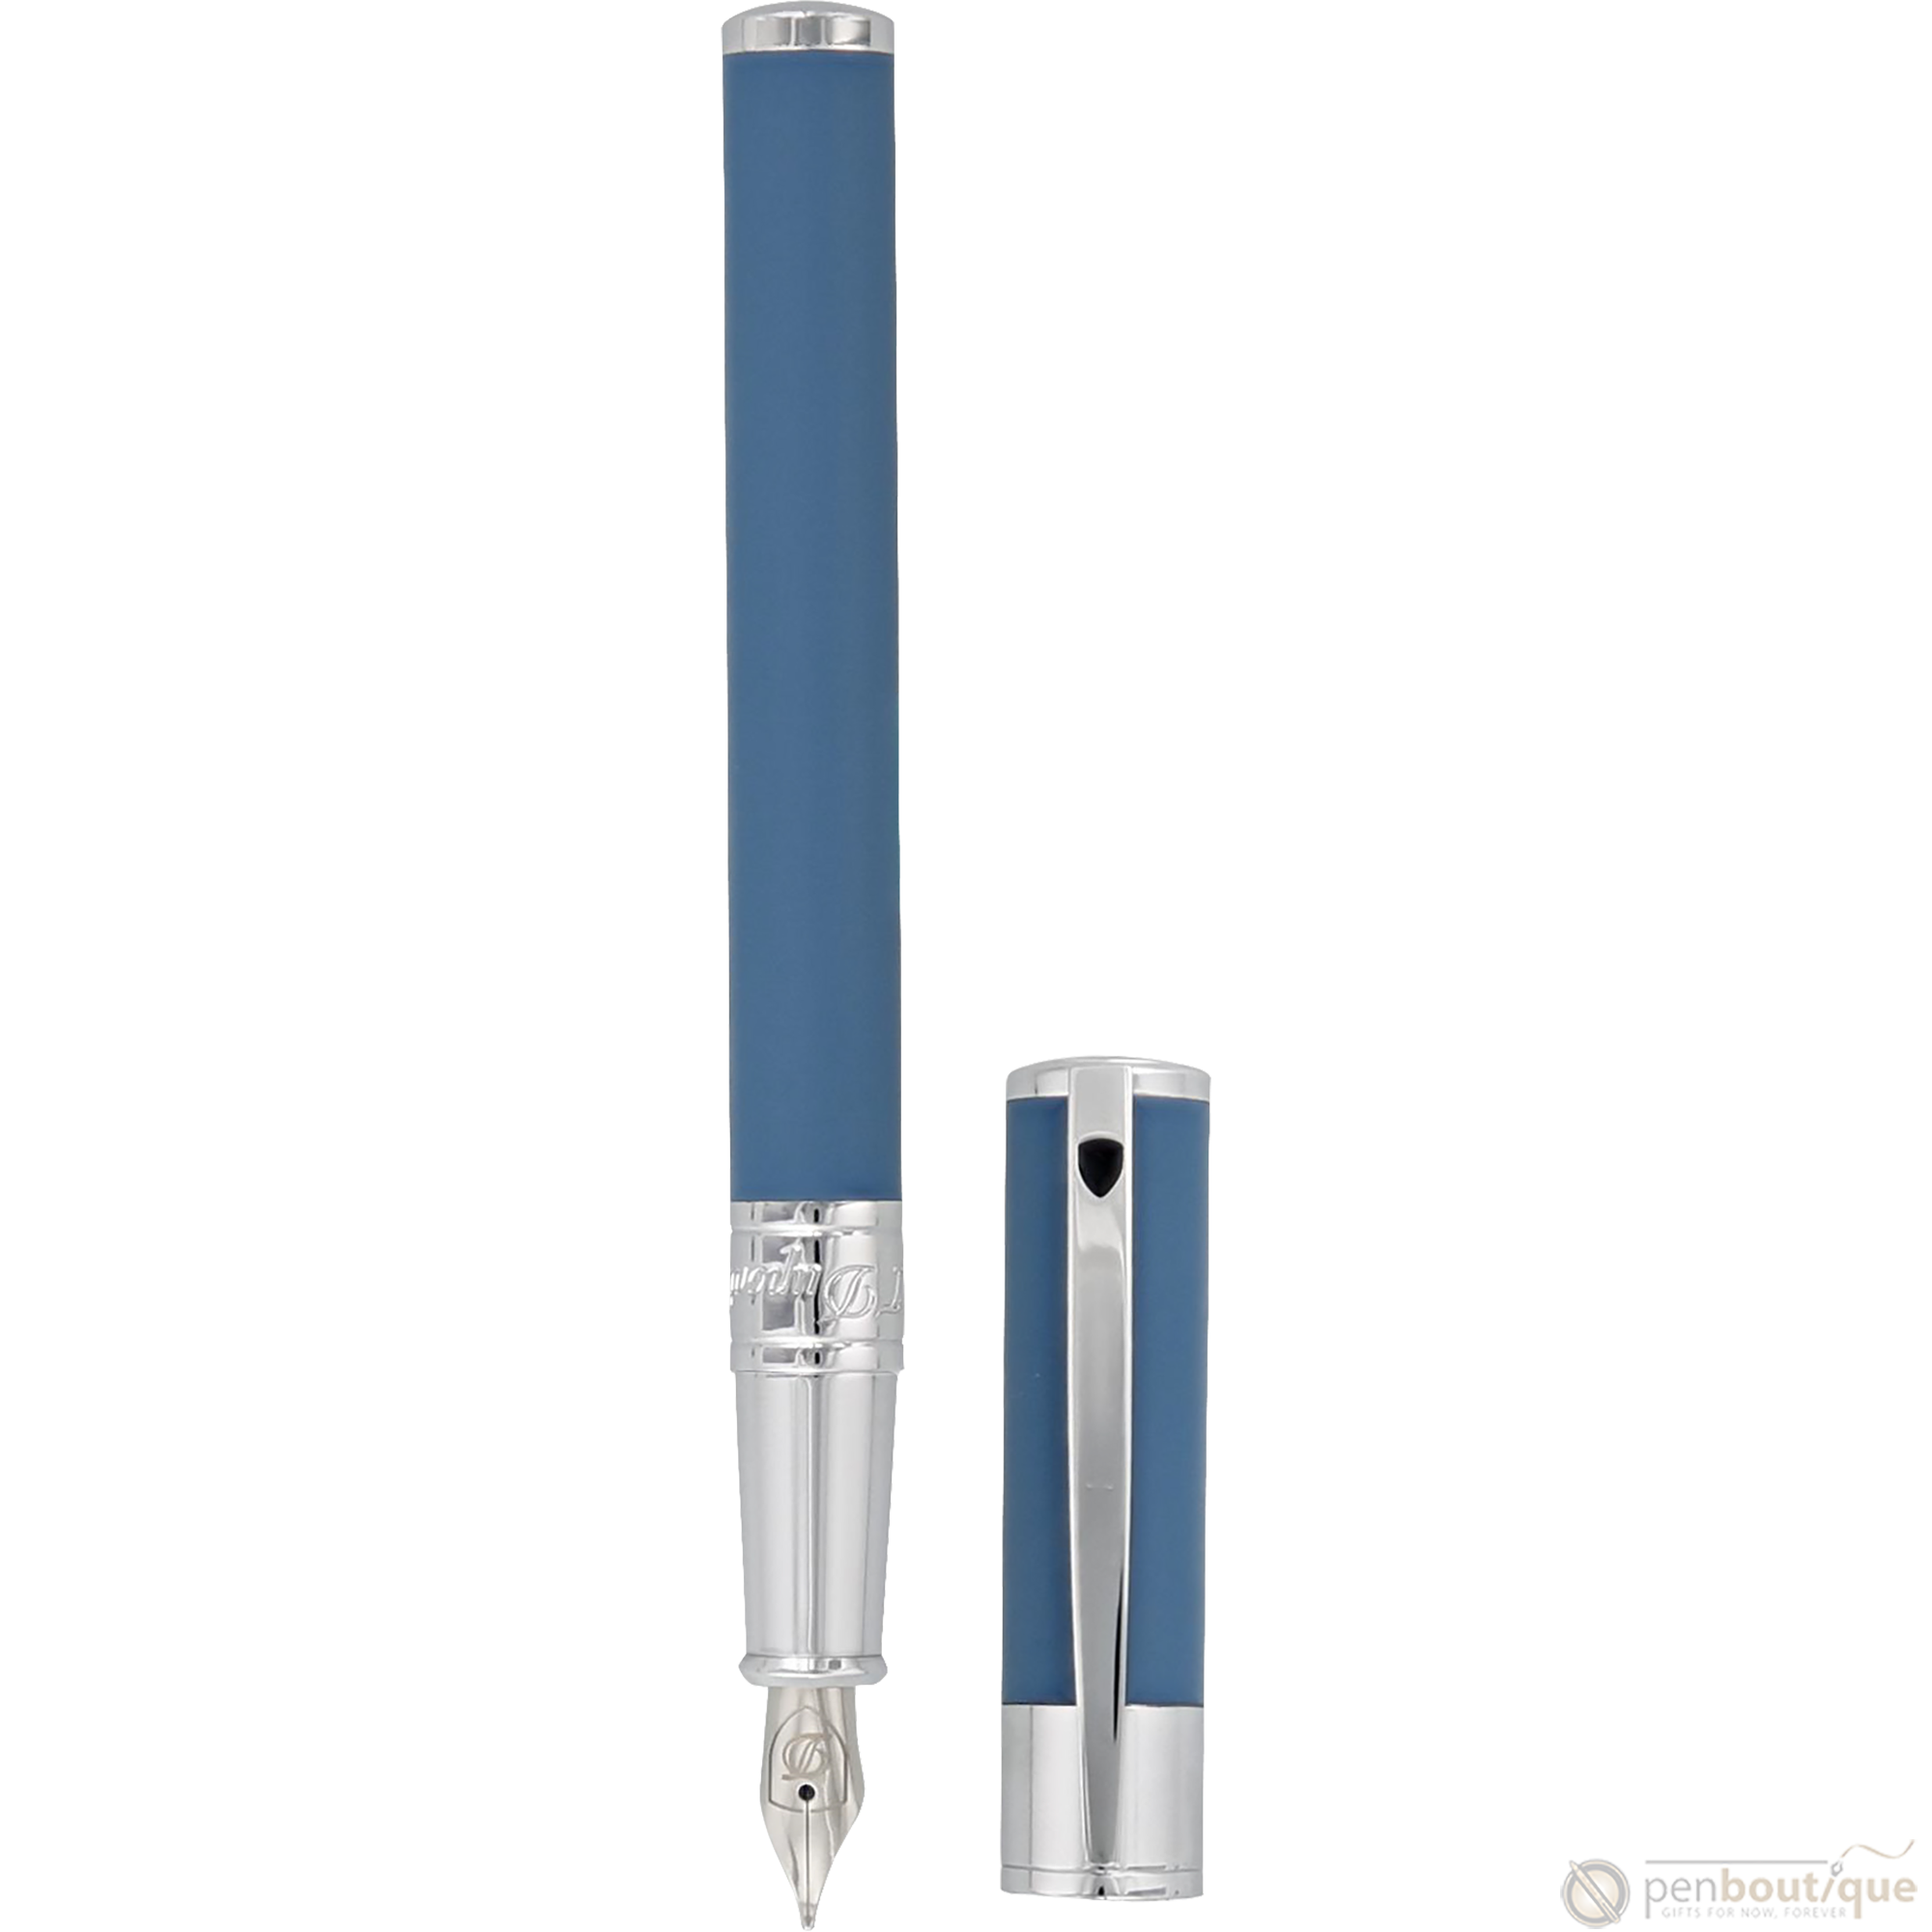 S T Dupont D-Initial Fountain Pen - Shark Blue-Pen Boutique Ltd